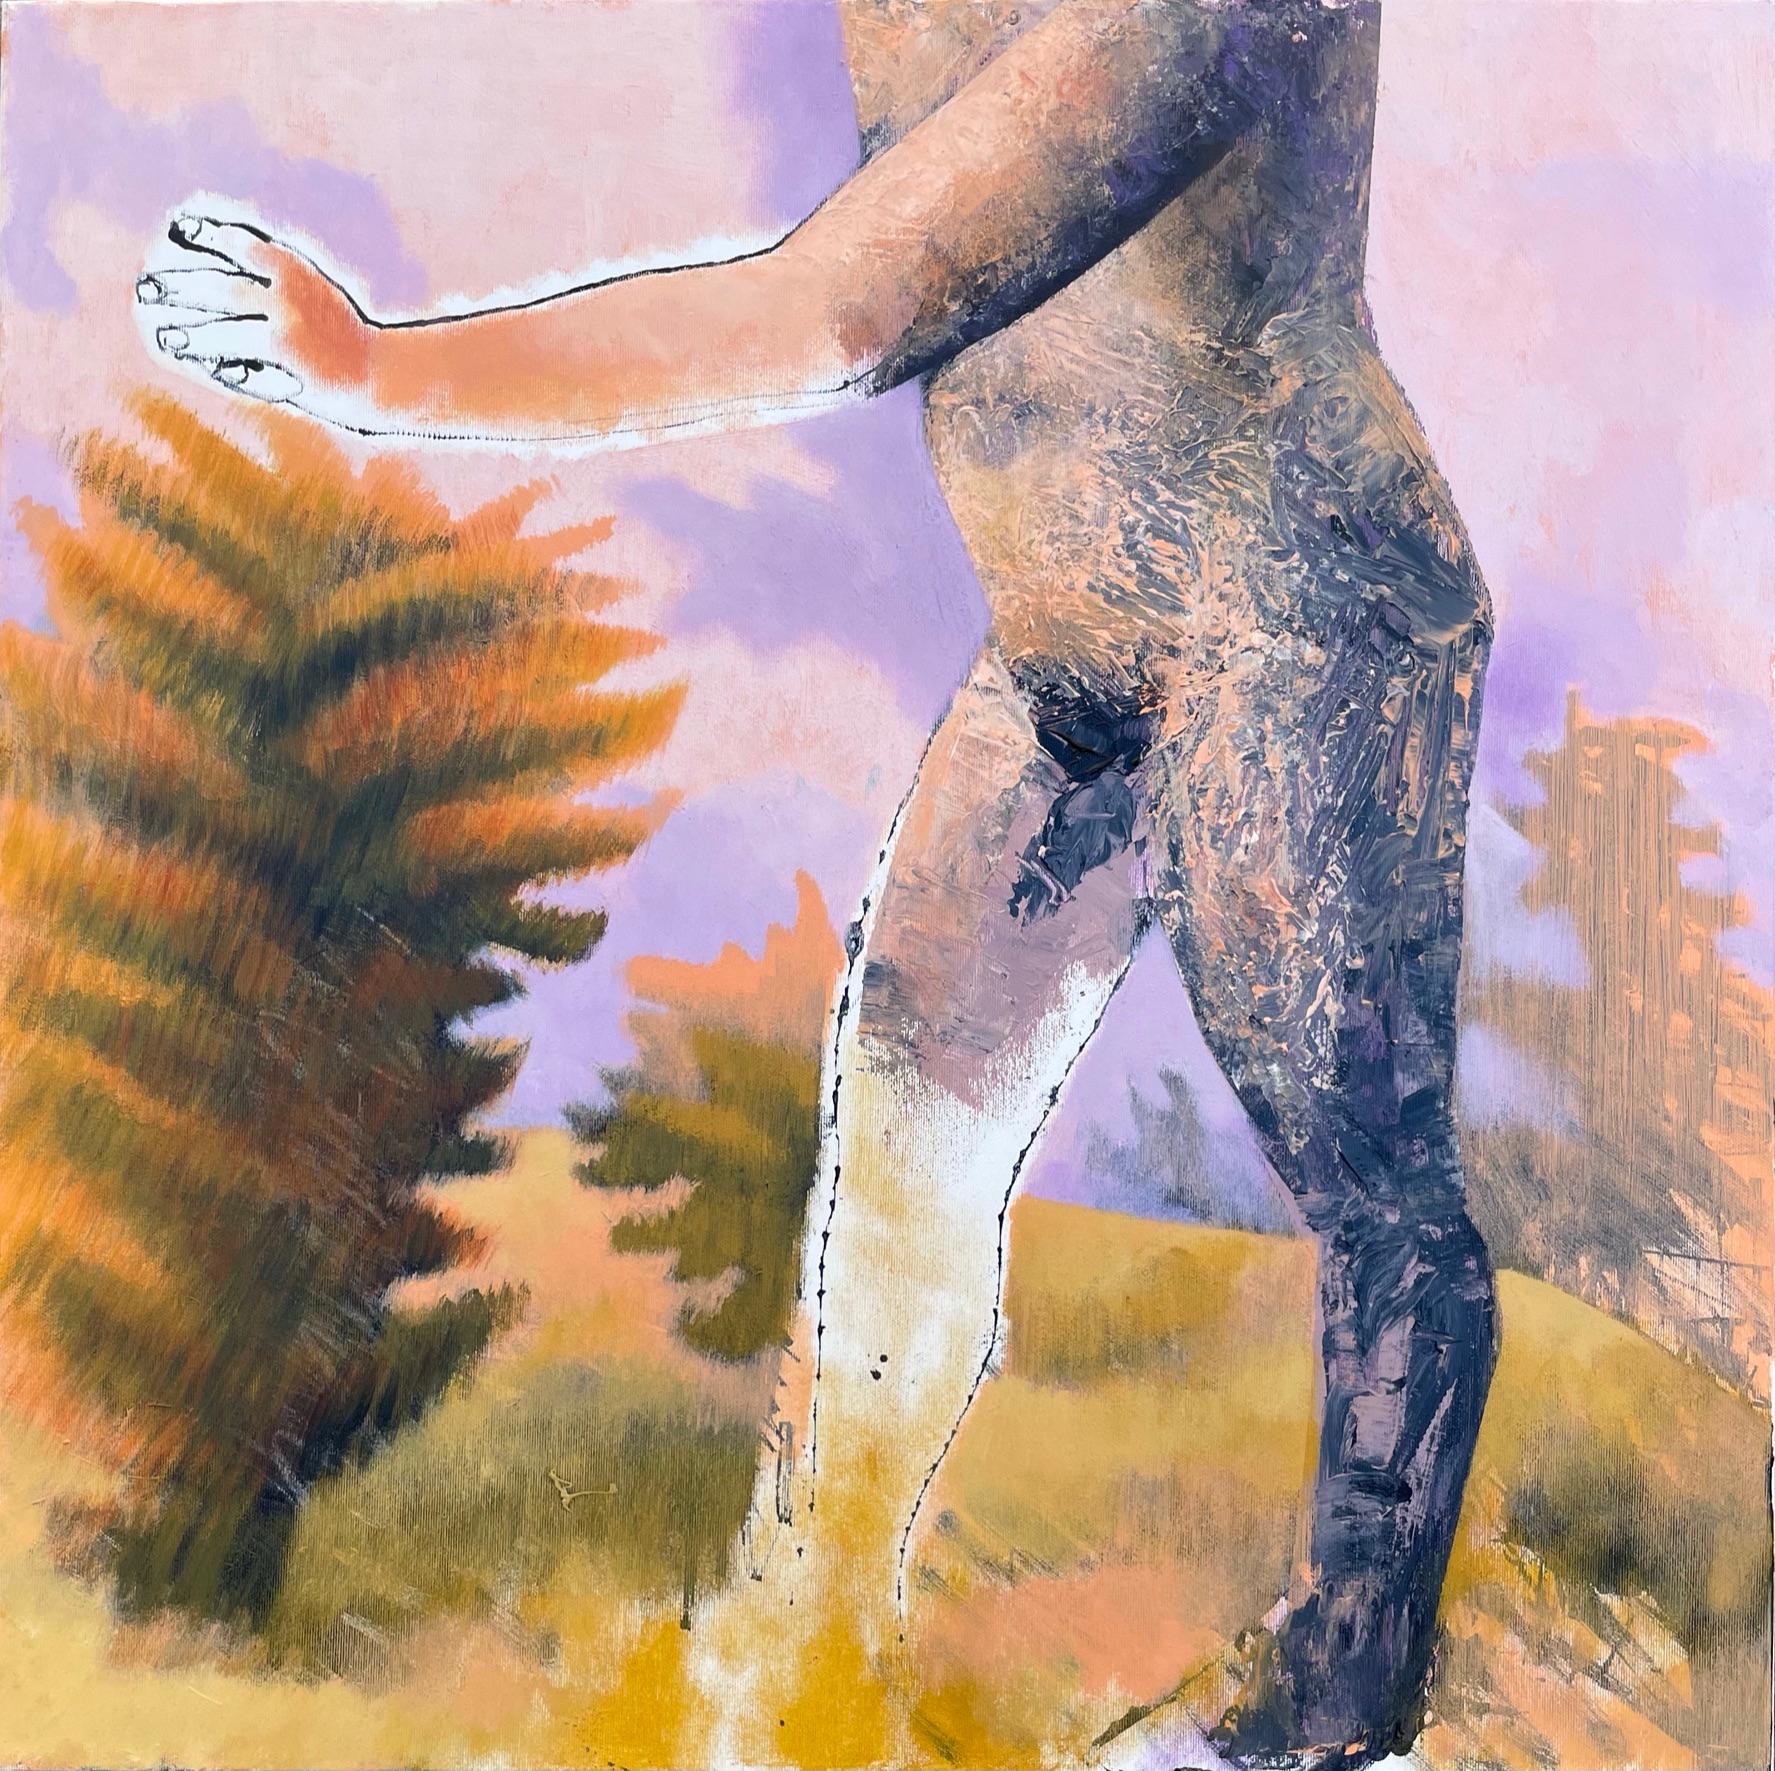 Figure, die in einer trockenen Landschaft geht, 21. Jahrhundert, männlich, nackt, Natur, Sommer